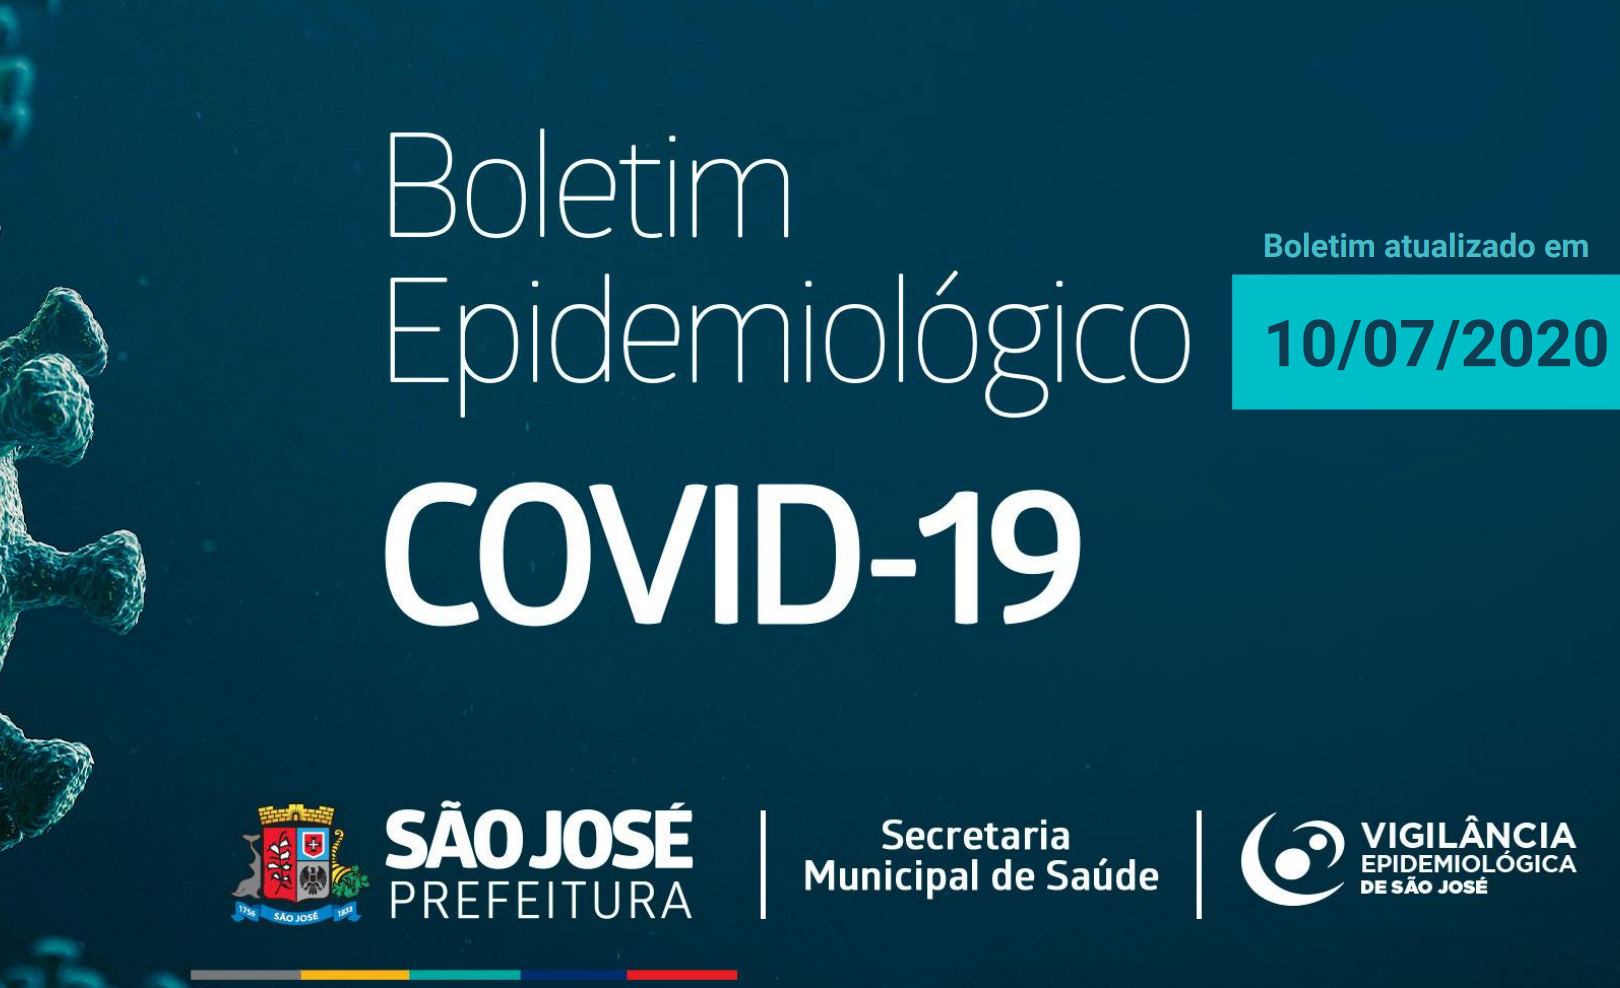 You are currently viewing Boletim Epidemiológico registra 1492 casos da Covid-19 em São José